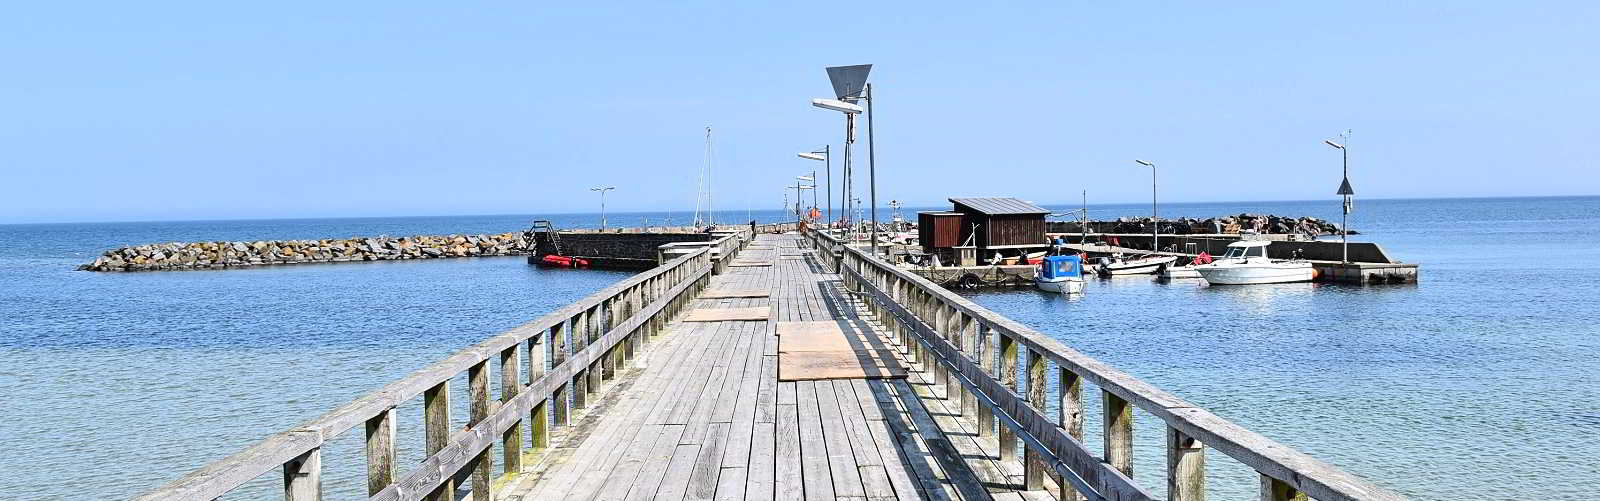 Hafen Snogebæk